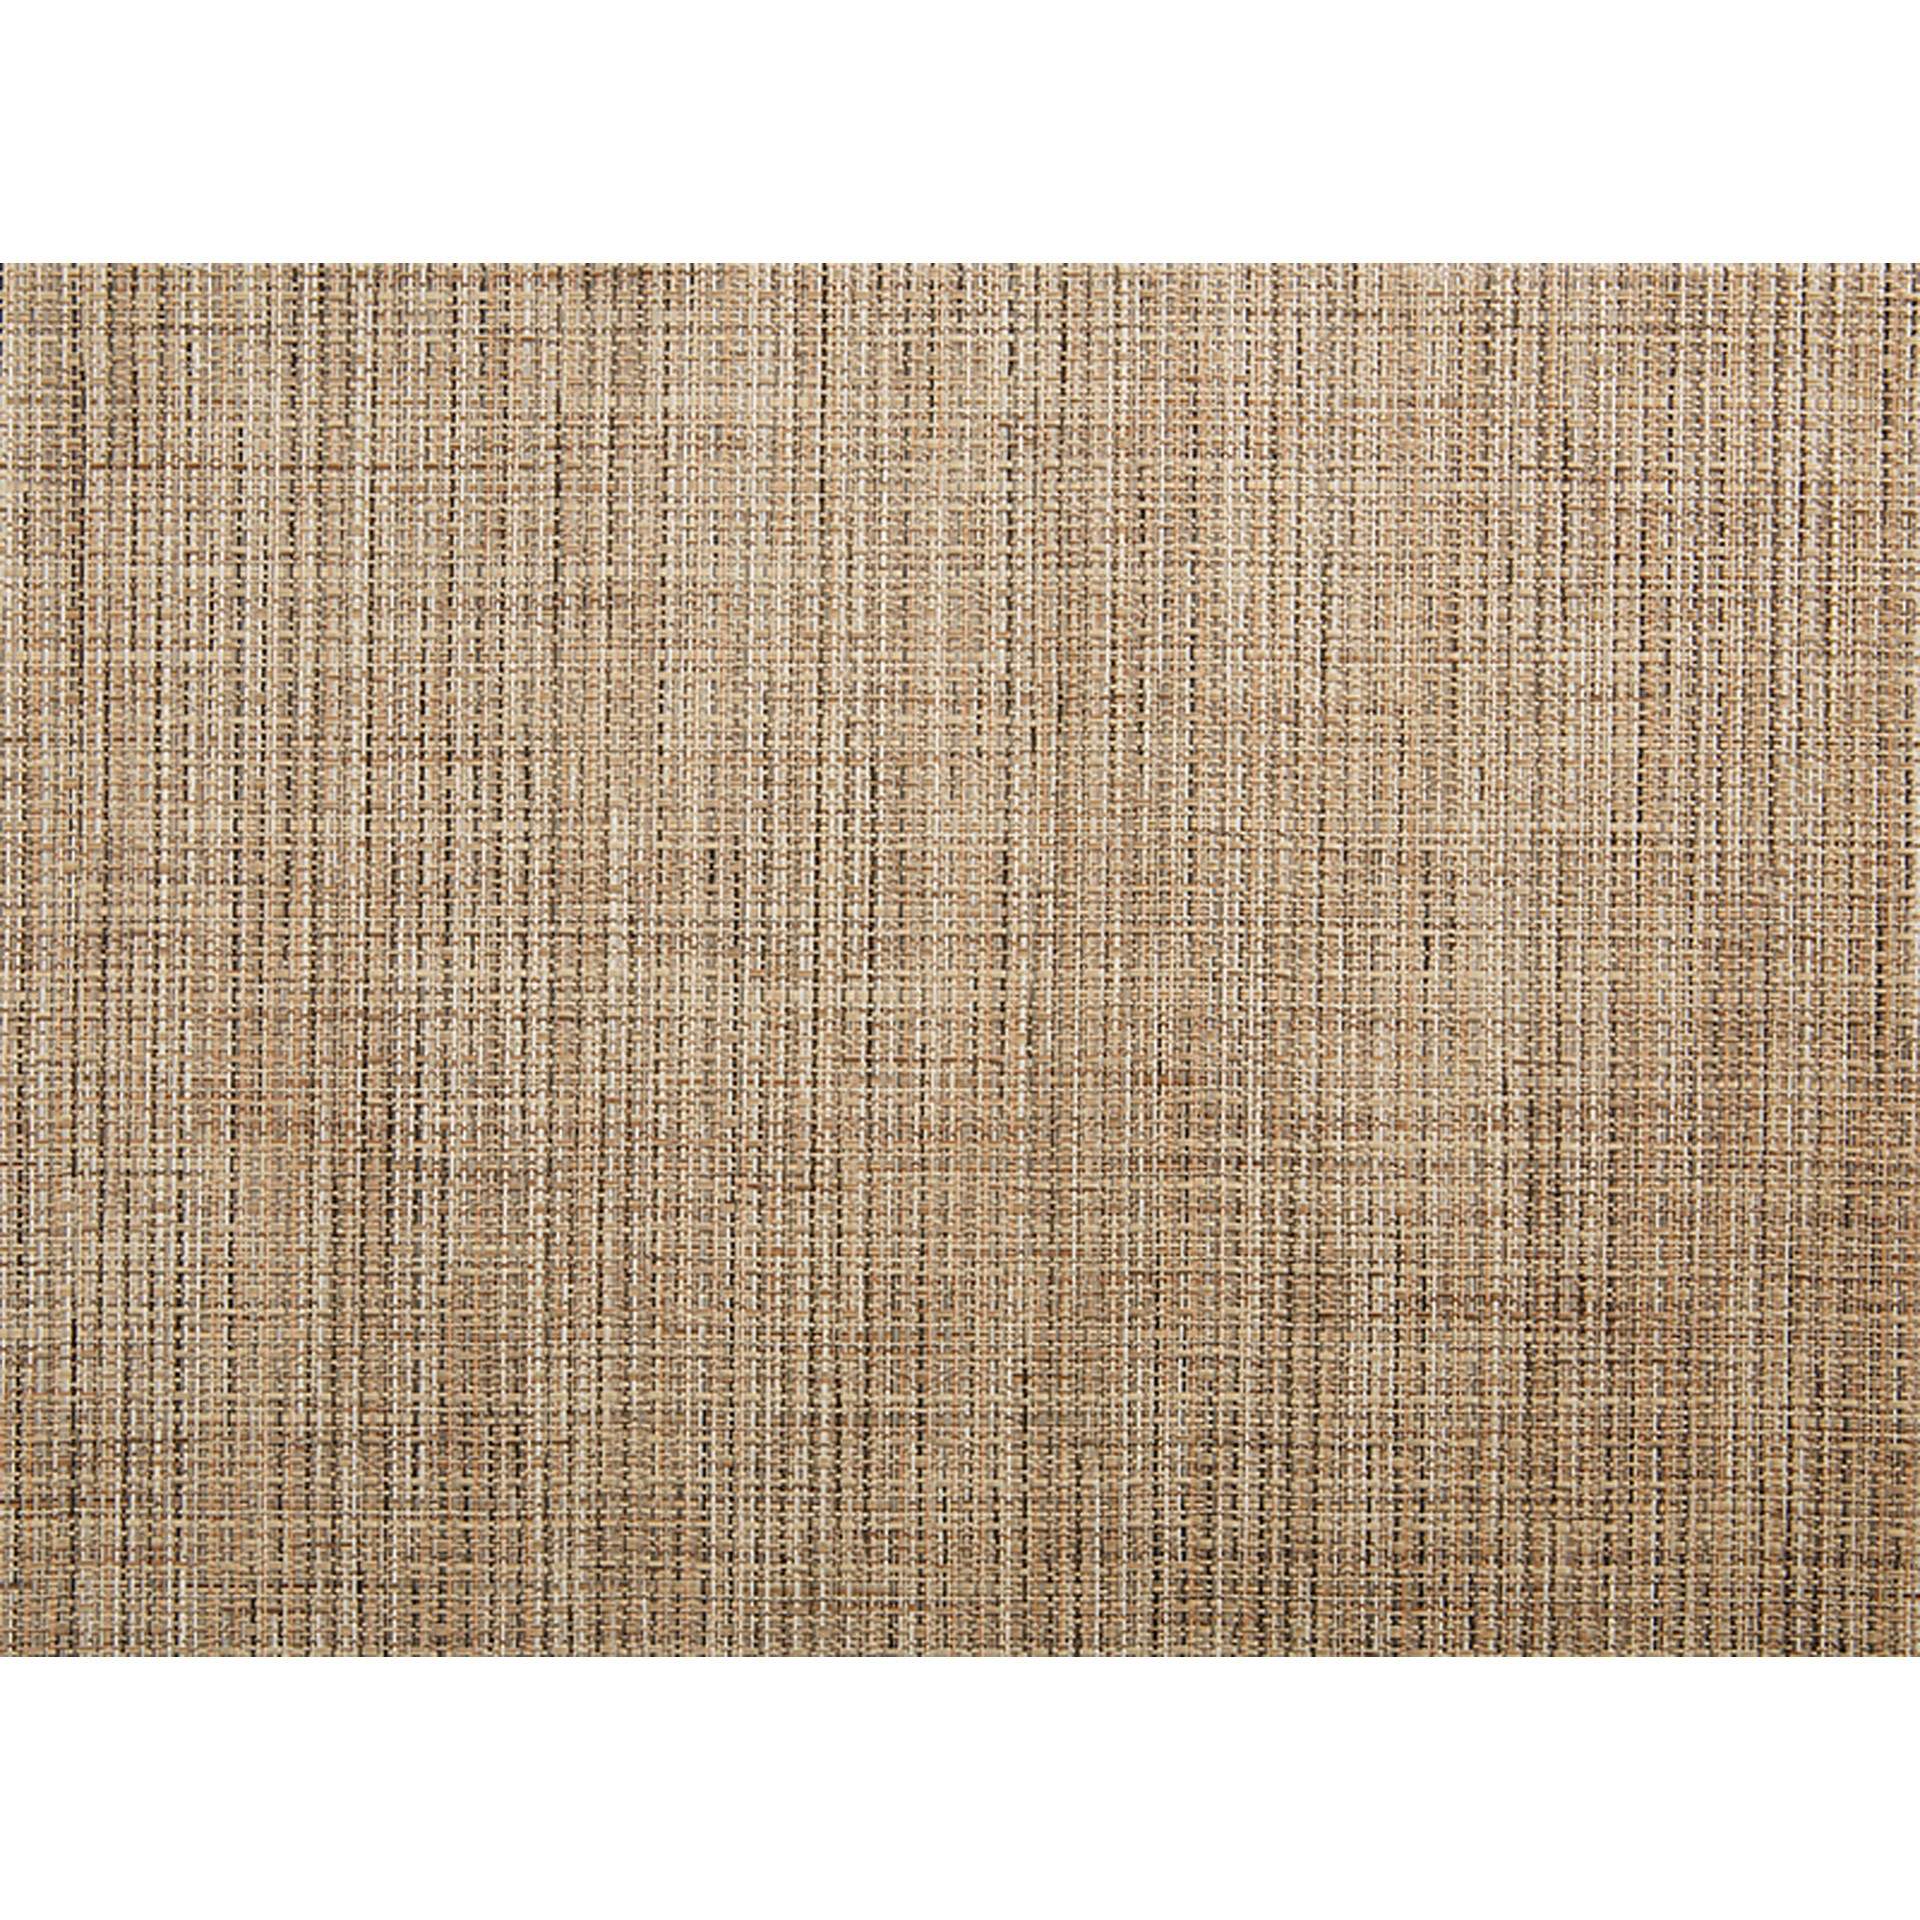 Tischset - beige / braun - Abm. 45,0 x 33,0 x 0,1 cm - PVC - 60038-B